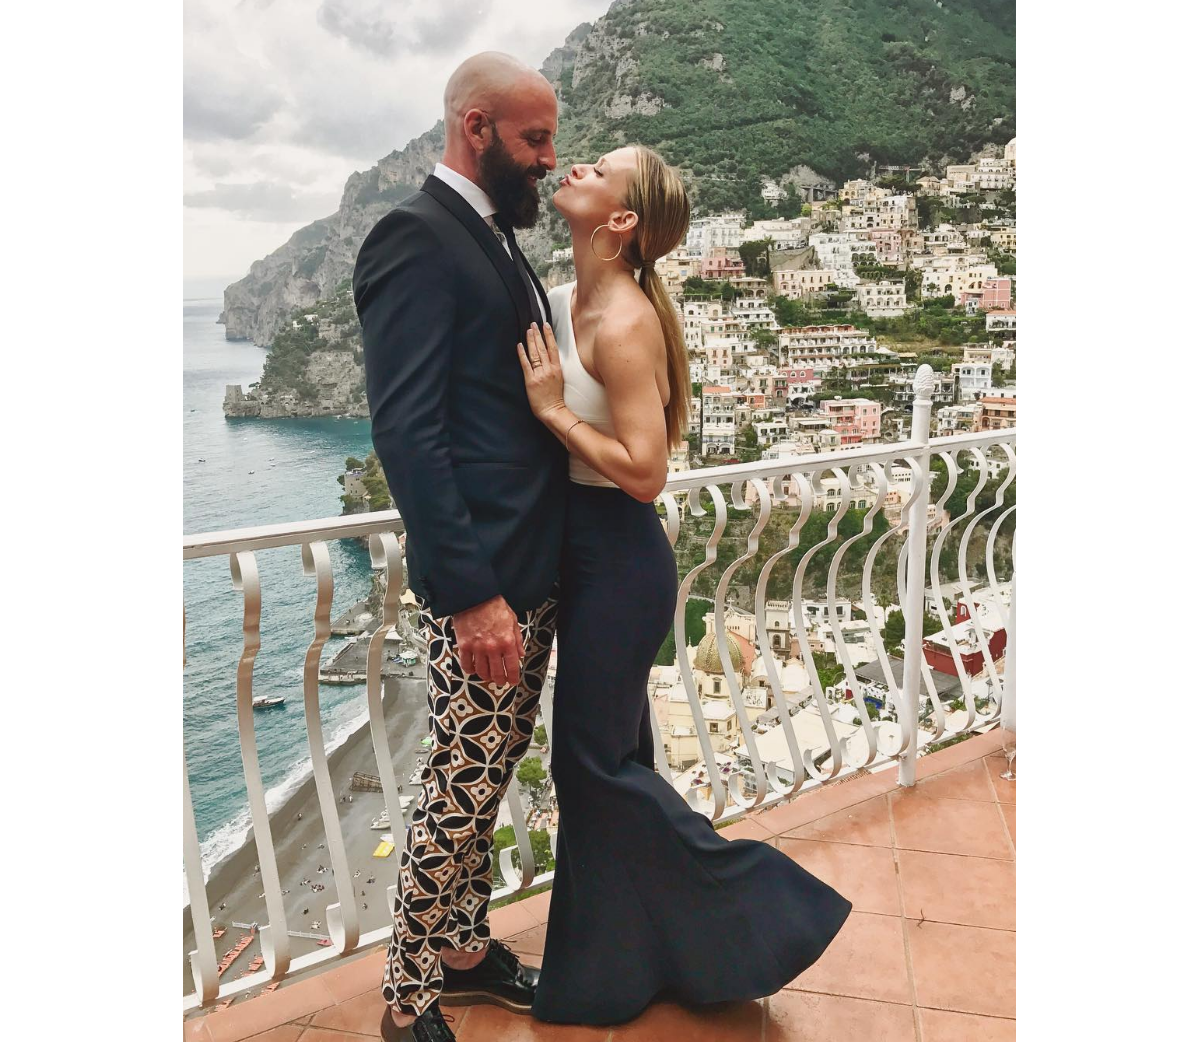 Photo A J Cook Et Son Mari Nathan Anderson En Vacances à Positano En Italie été 2017 